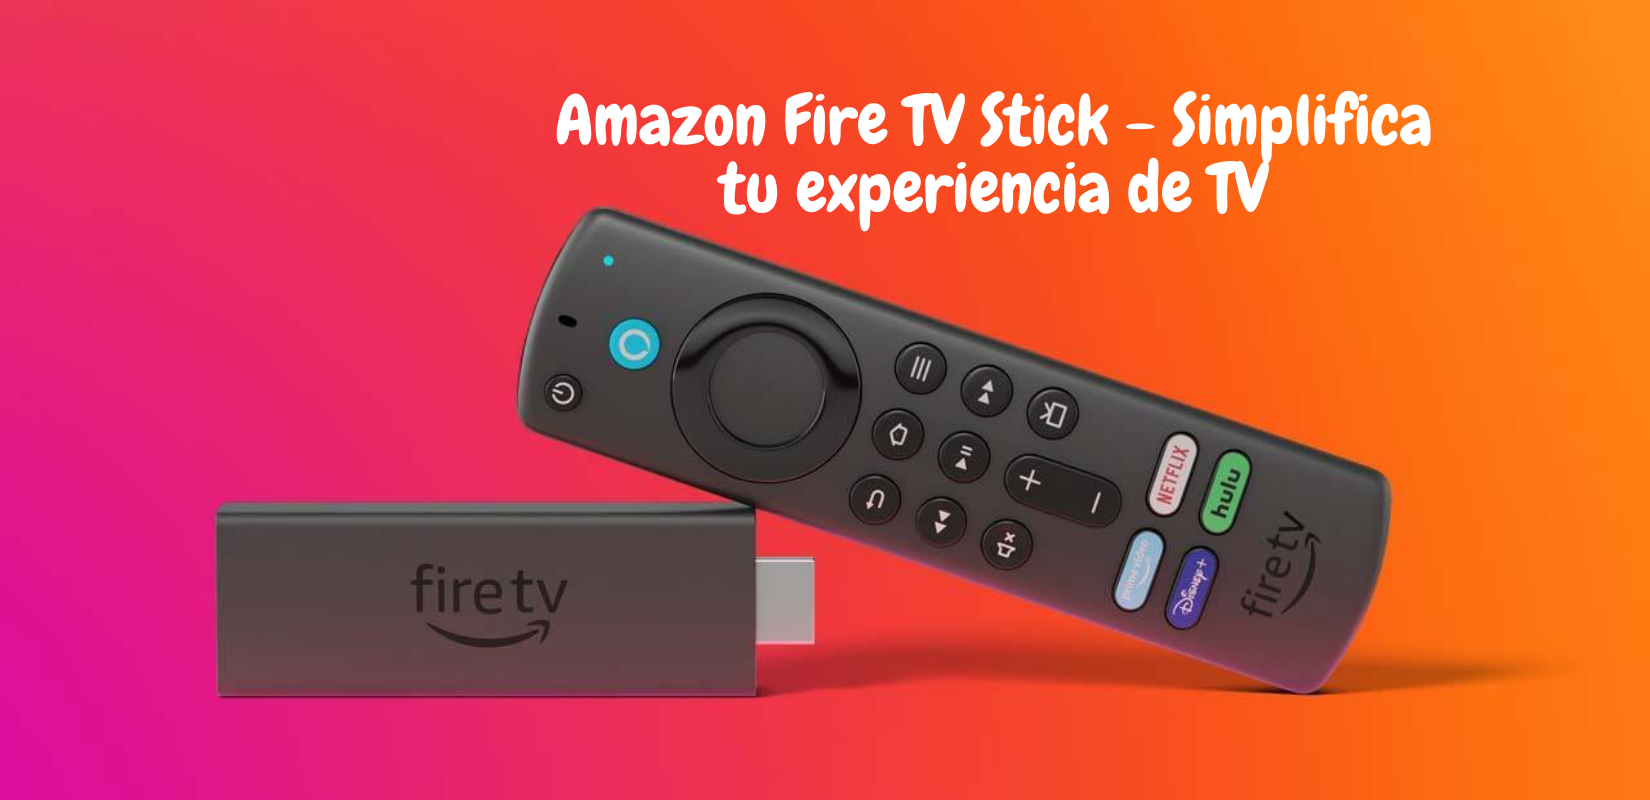 Amazon Fire TV Stick - Simplifica tu experiencia de TV